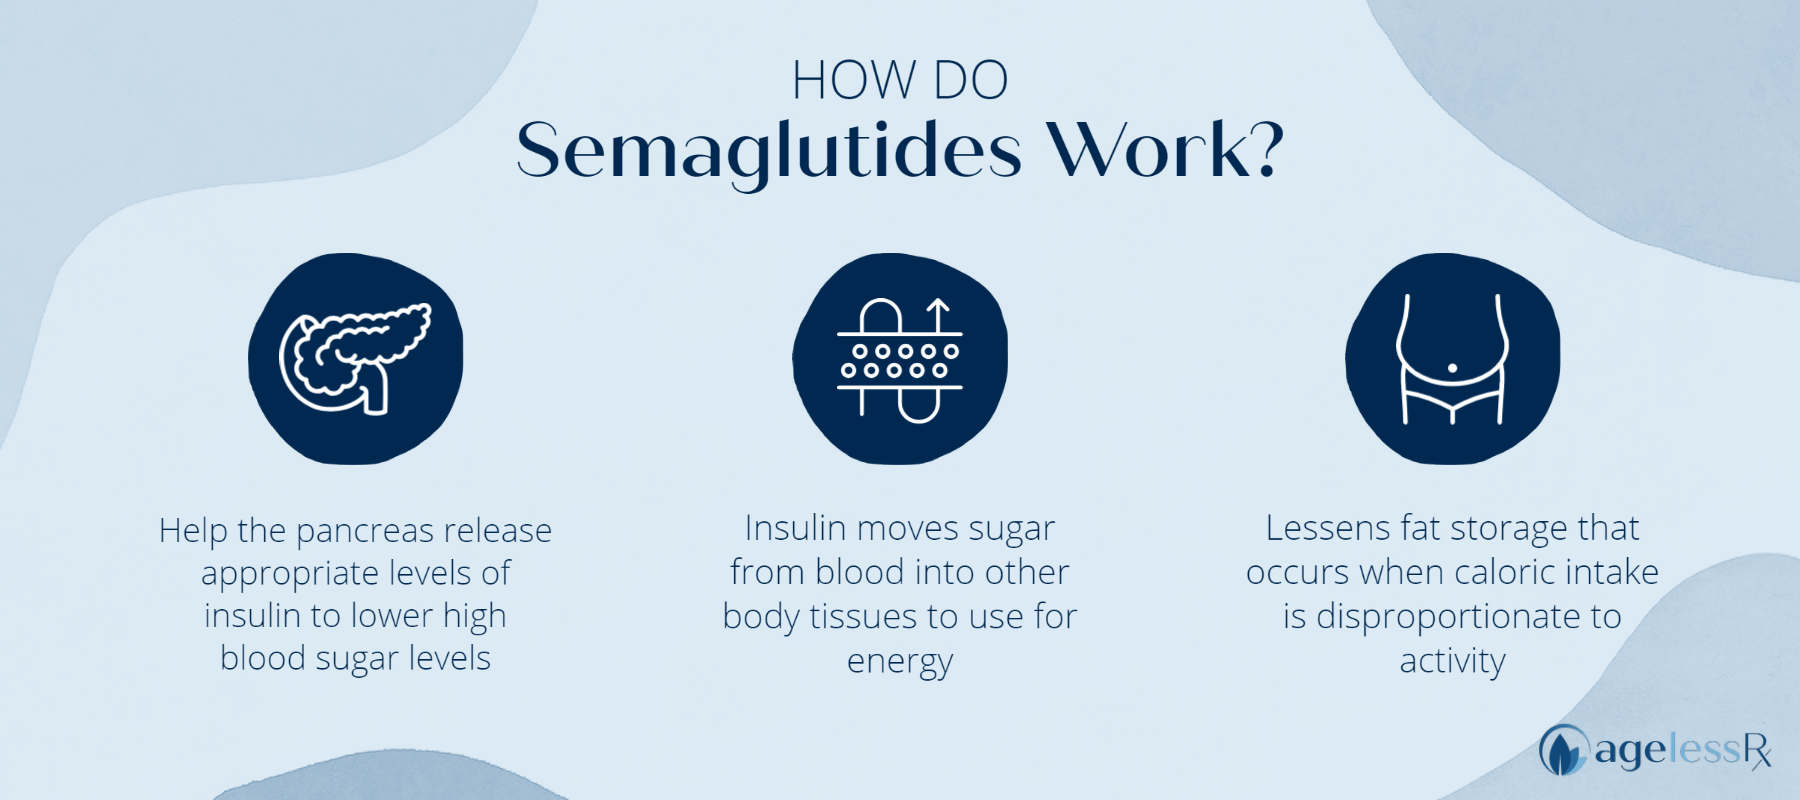 How do semiglutides work?